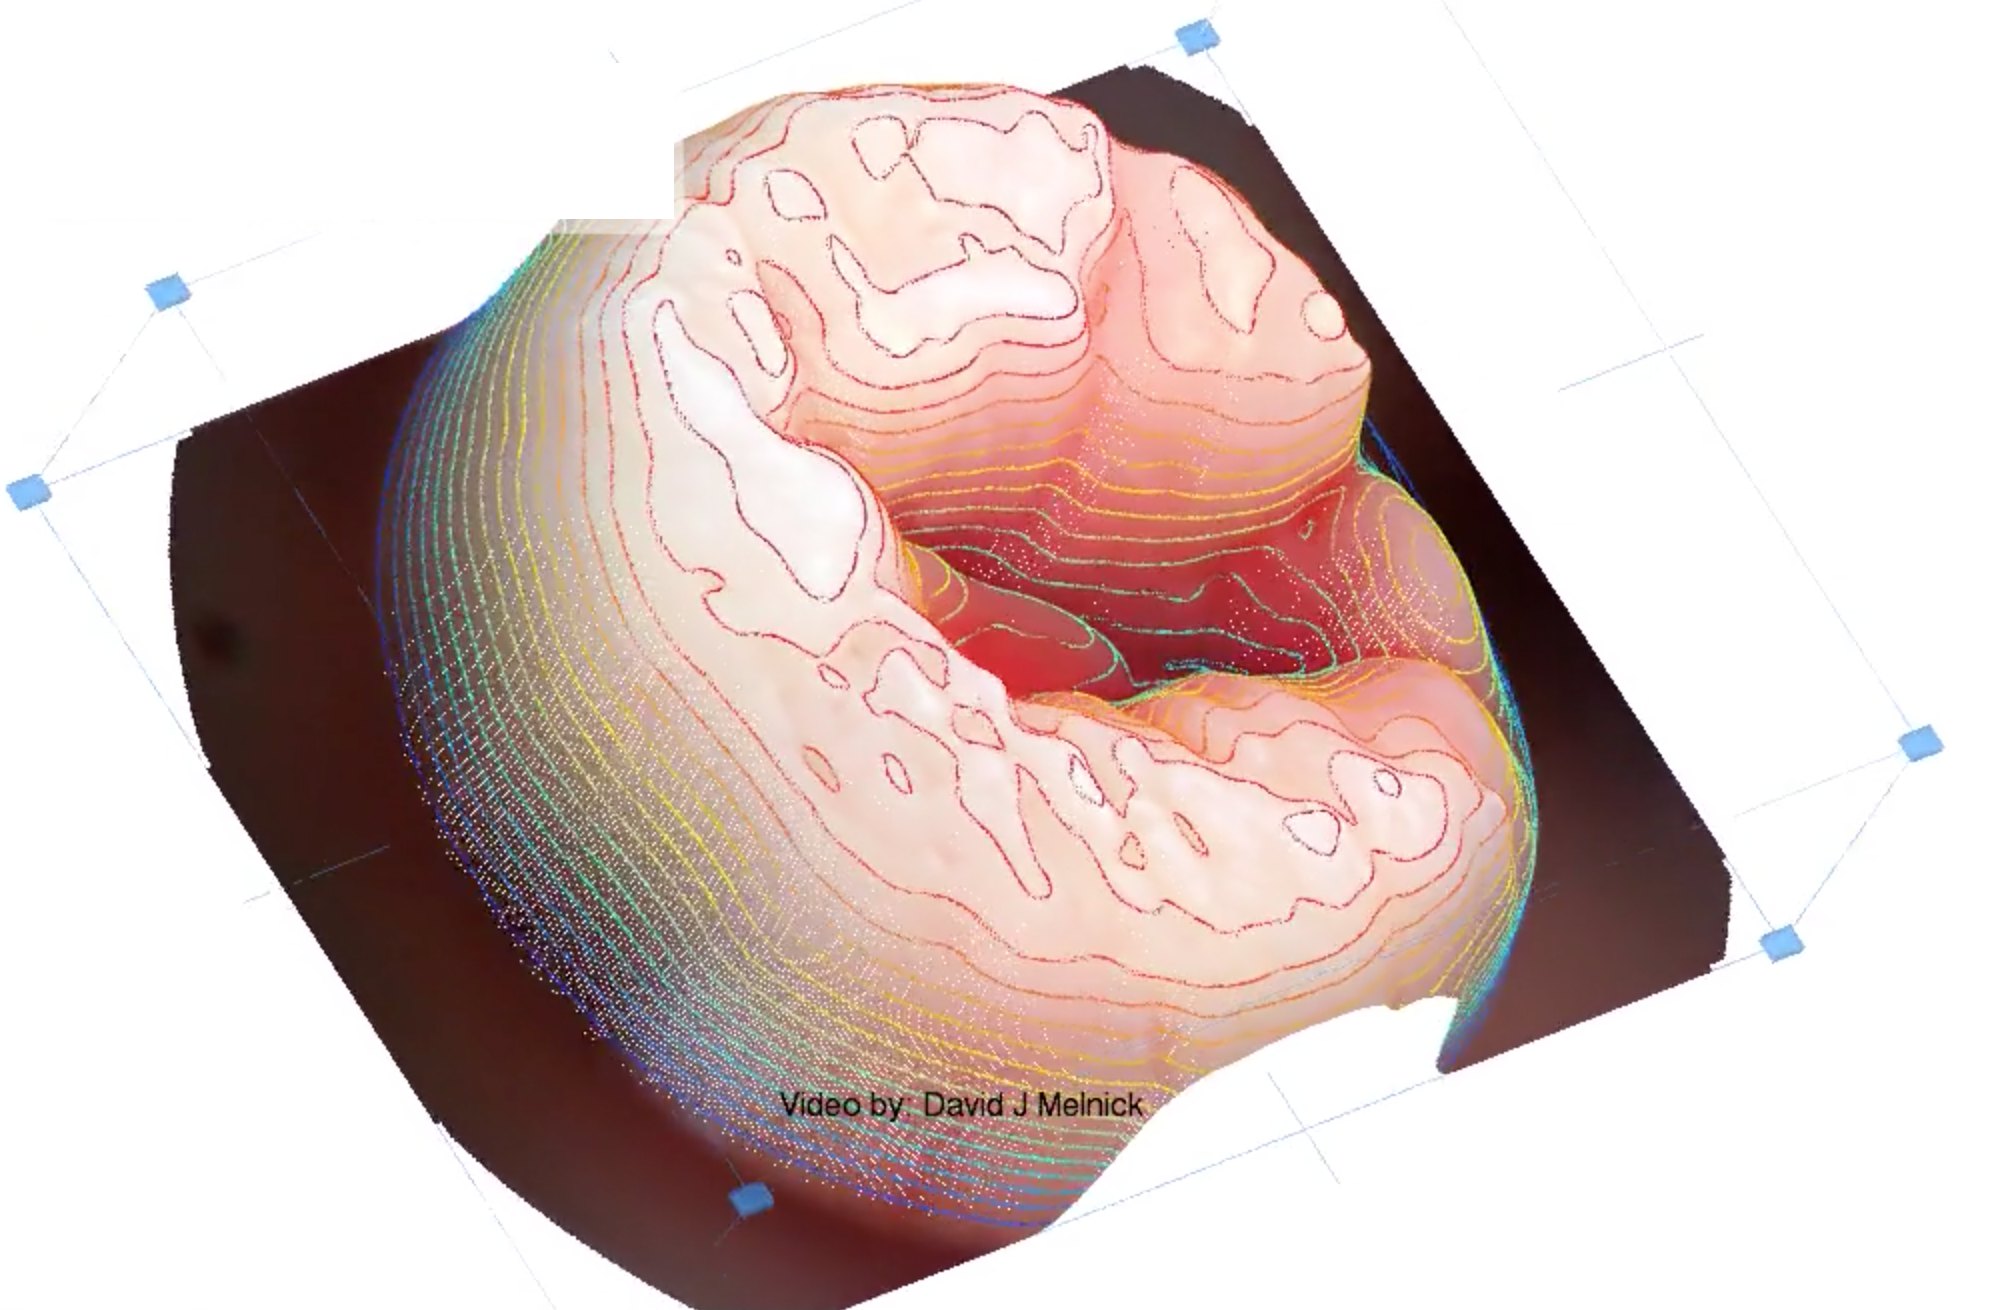 3D image of cervix